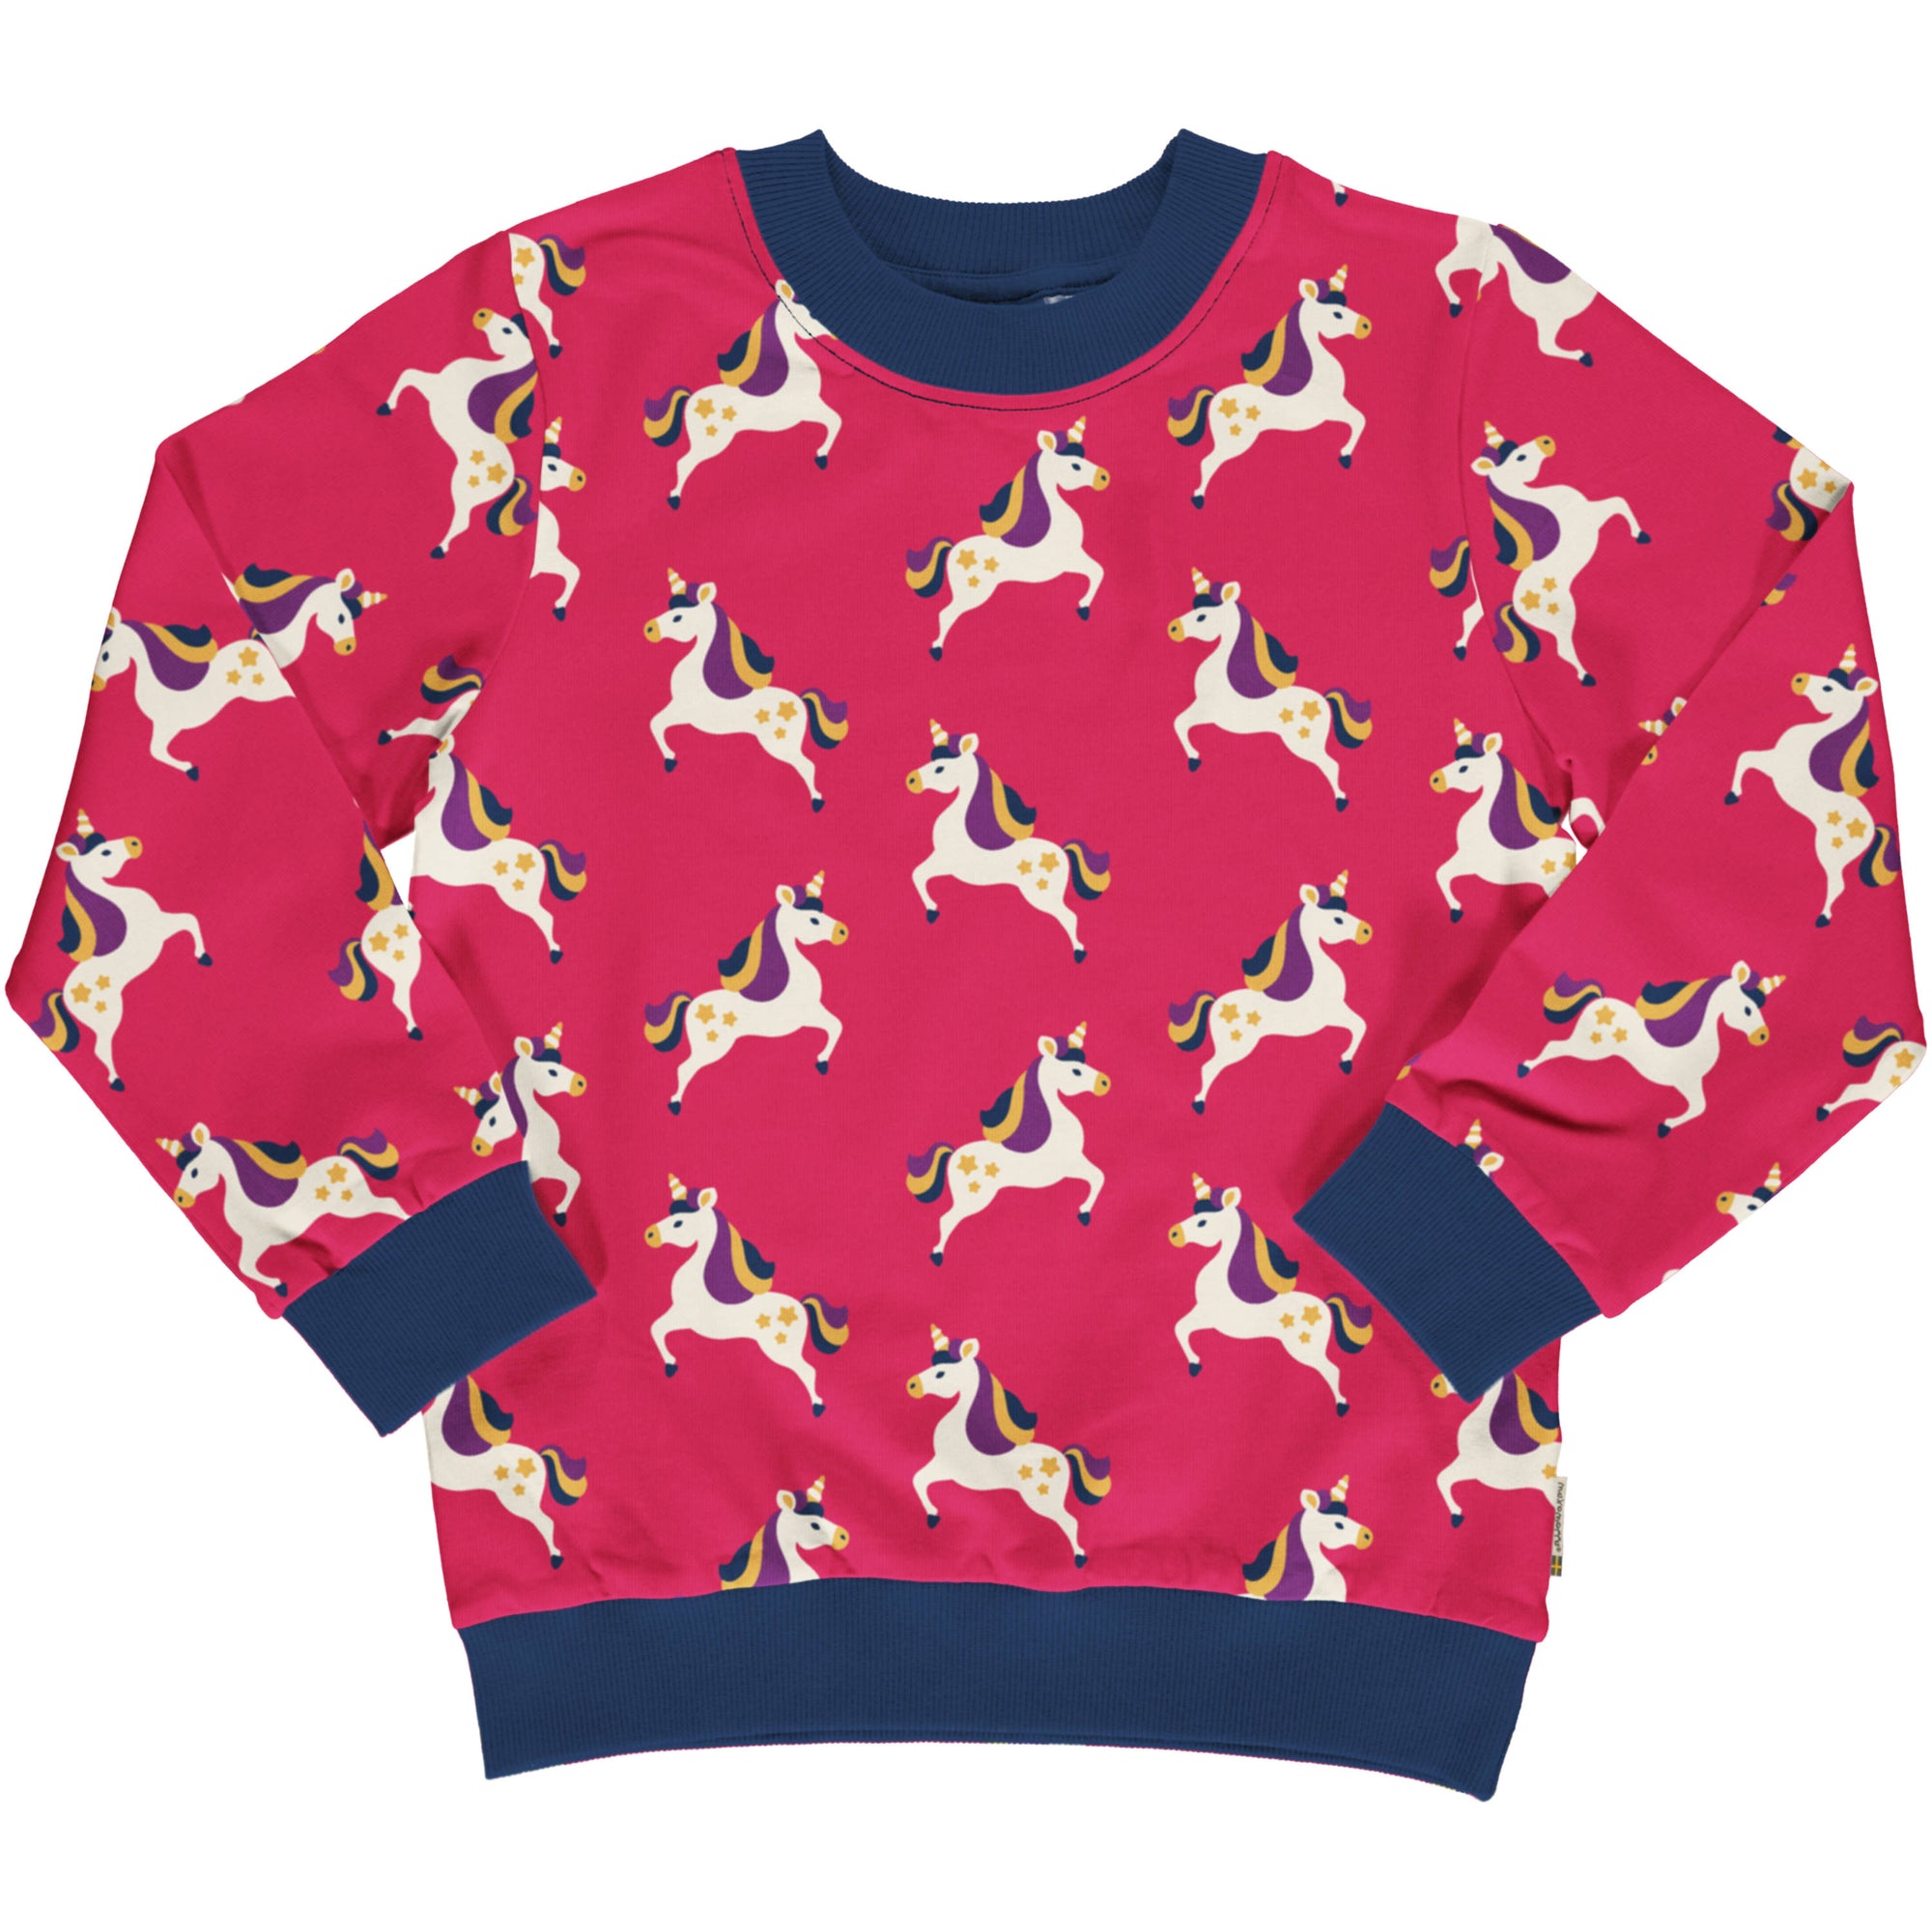 Maxomorra Unicorn Sweatshirt Sxa2320 Clothing 3-4YRS / Pink,5-6YRS / Pink,7-8YRS / Pink,9-10YRS / Pink